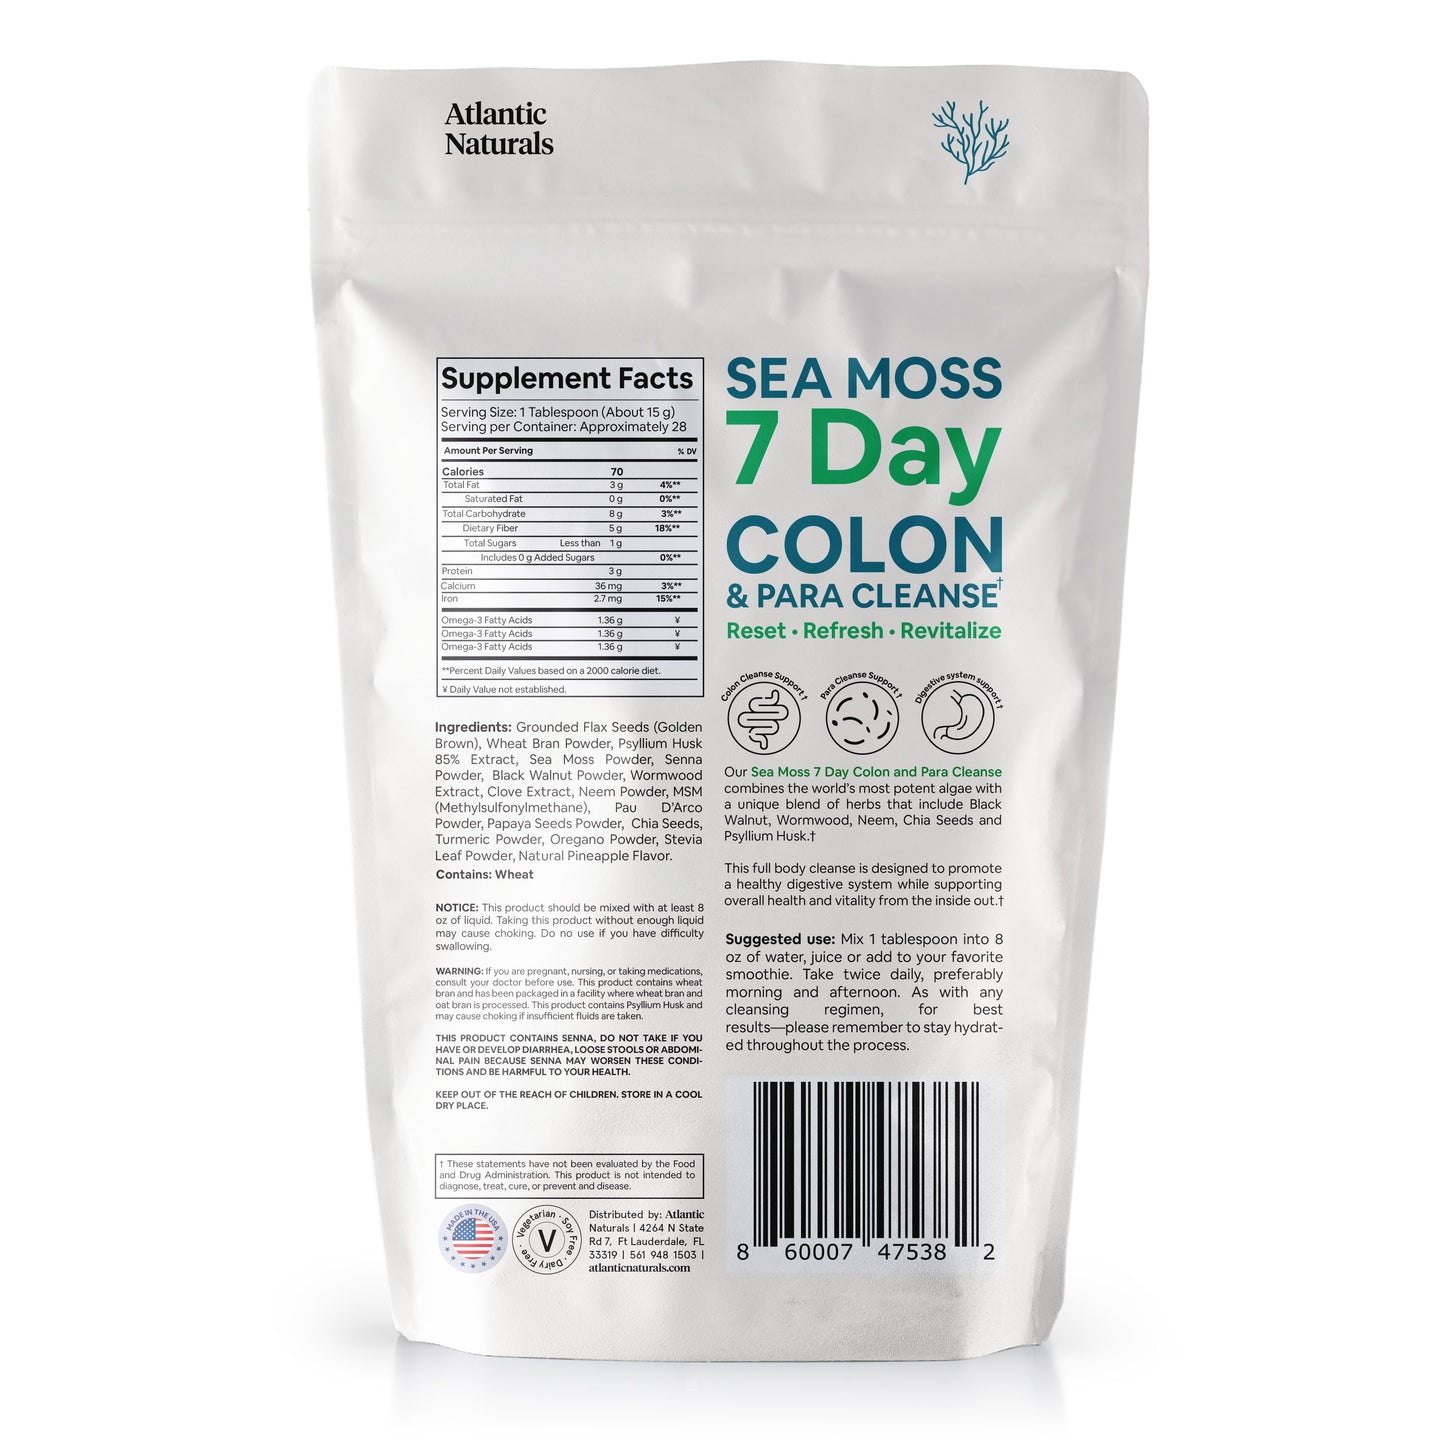 Sea Moss 7 jours Colon et Para Cleanse | Saveur d'ananas